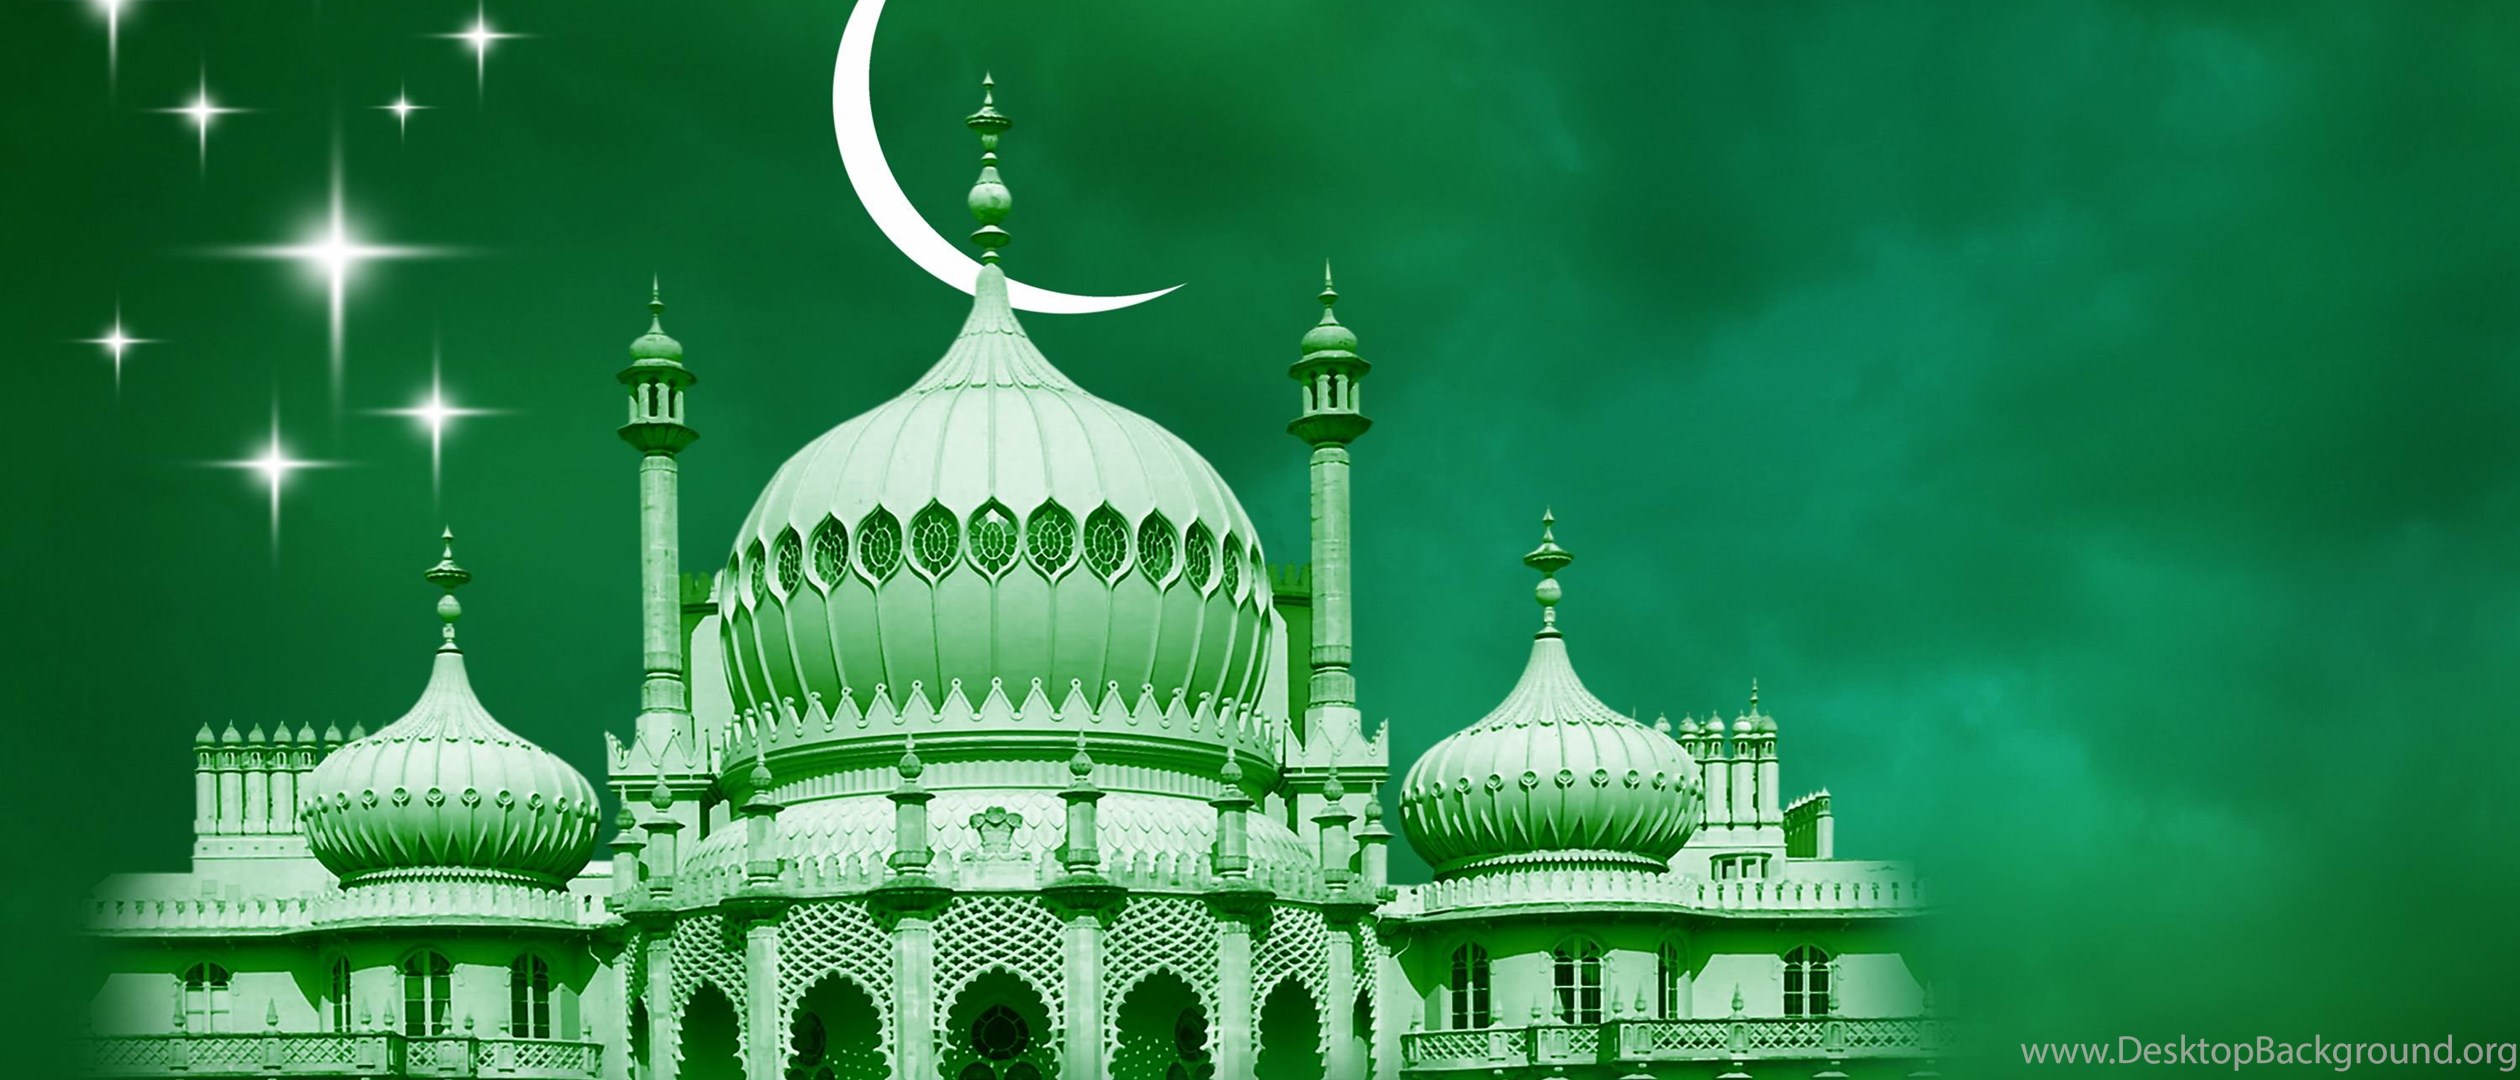 Рамадан мубарак булсын. Мусульманский праздник Курбан байрам. Ураза и Курбан байрам. Мечеть на зеленом фоне. С праздником Курбан байрам.